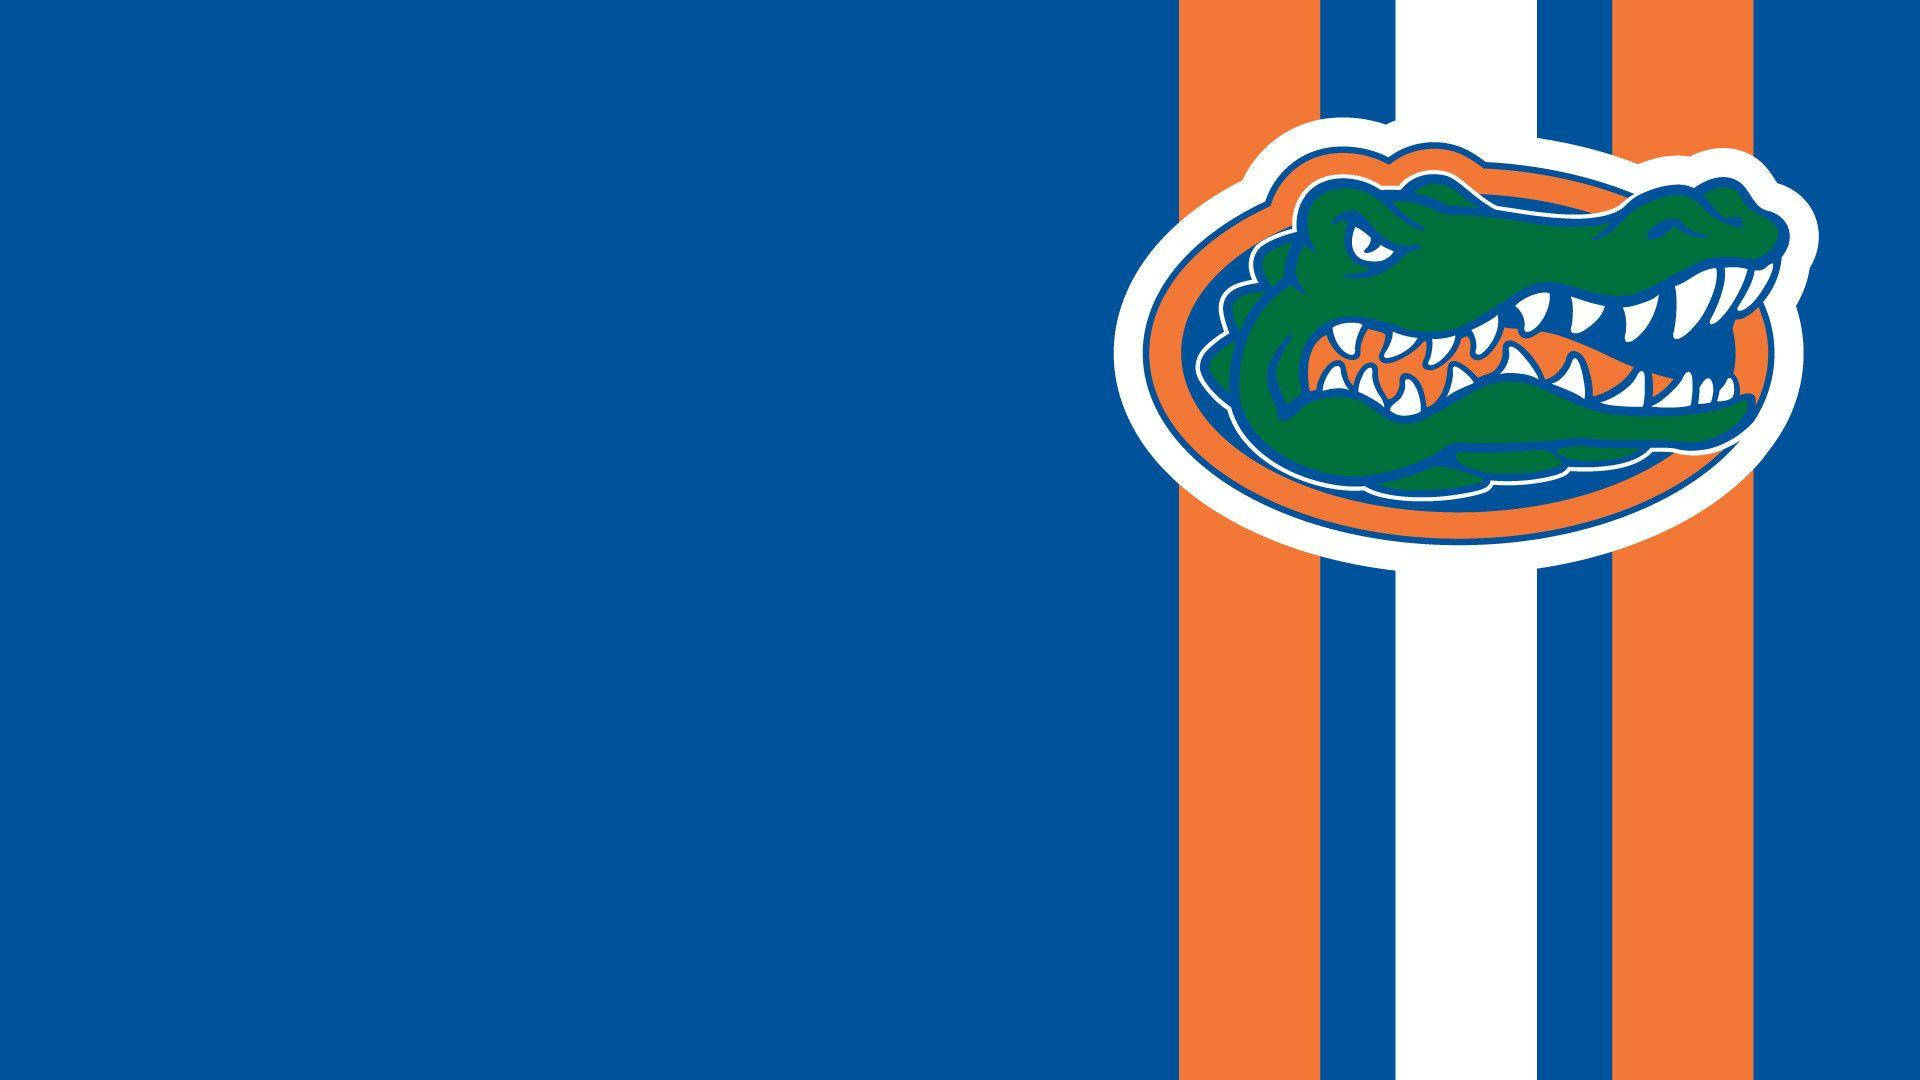 University Of Florida Gators Aesthetic Background